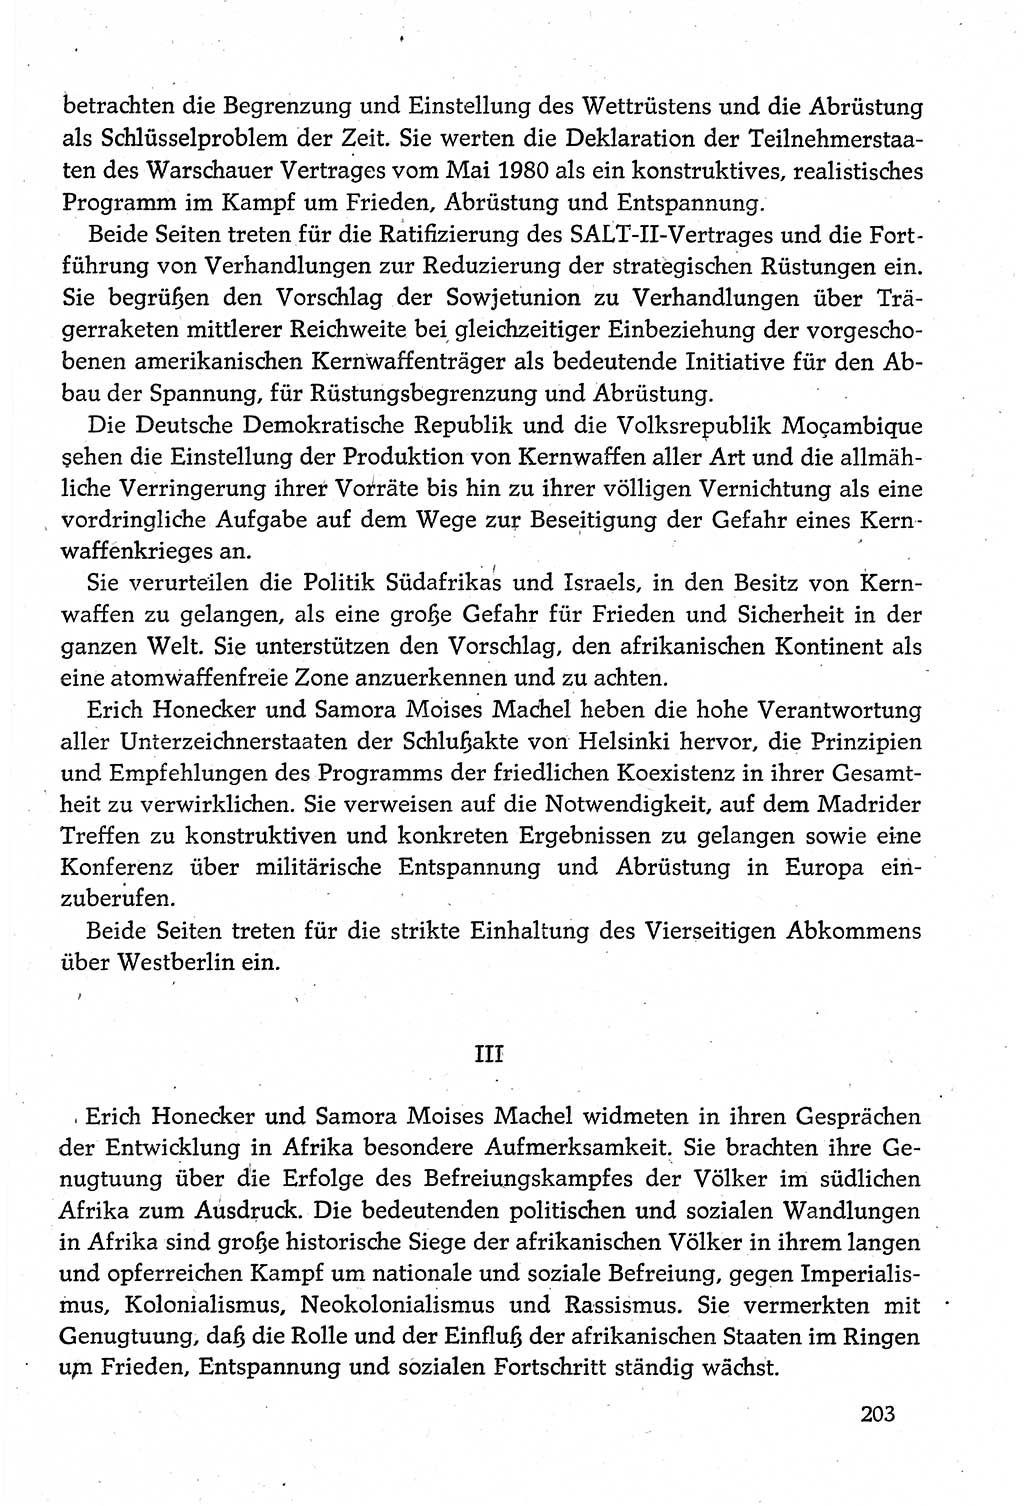 Dokumente der Sozialistischen Einheitspartei Deutschlands (SED) [Deutsche Demokratische Republik (DDR)] 1980-1981, Seite 203 (Dok. SED DDR 1980-1981, S. 203)